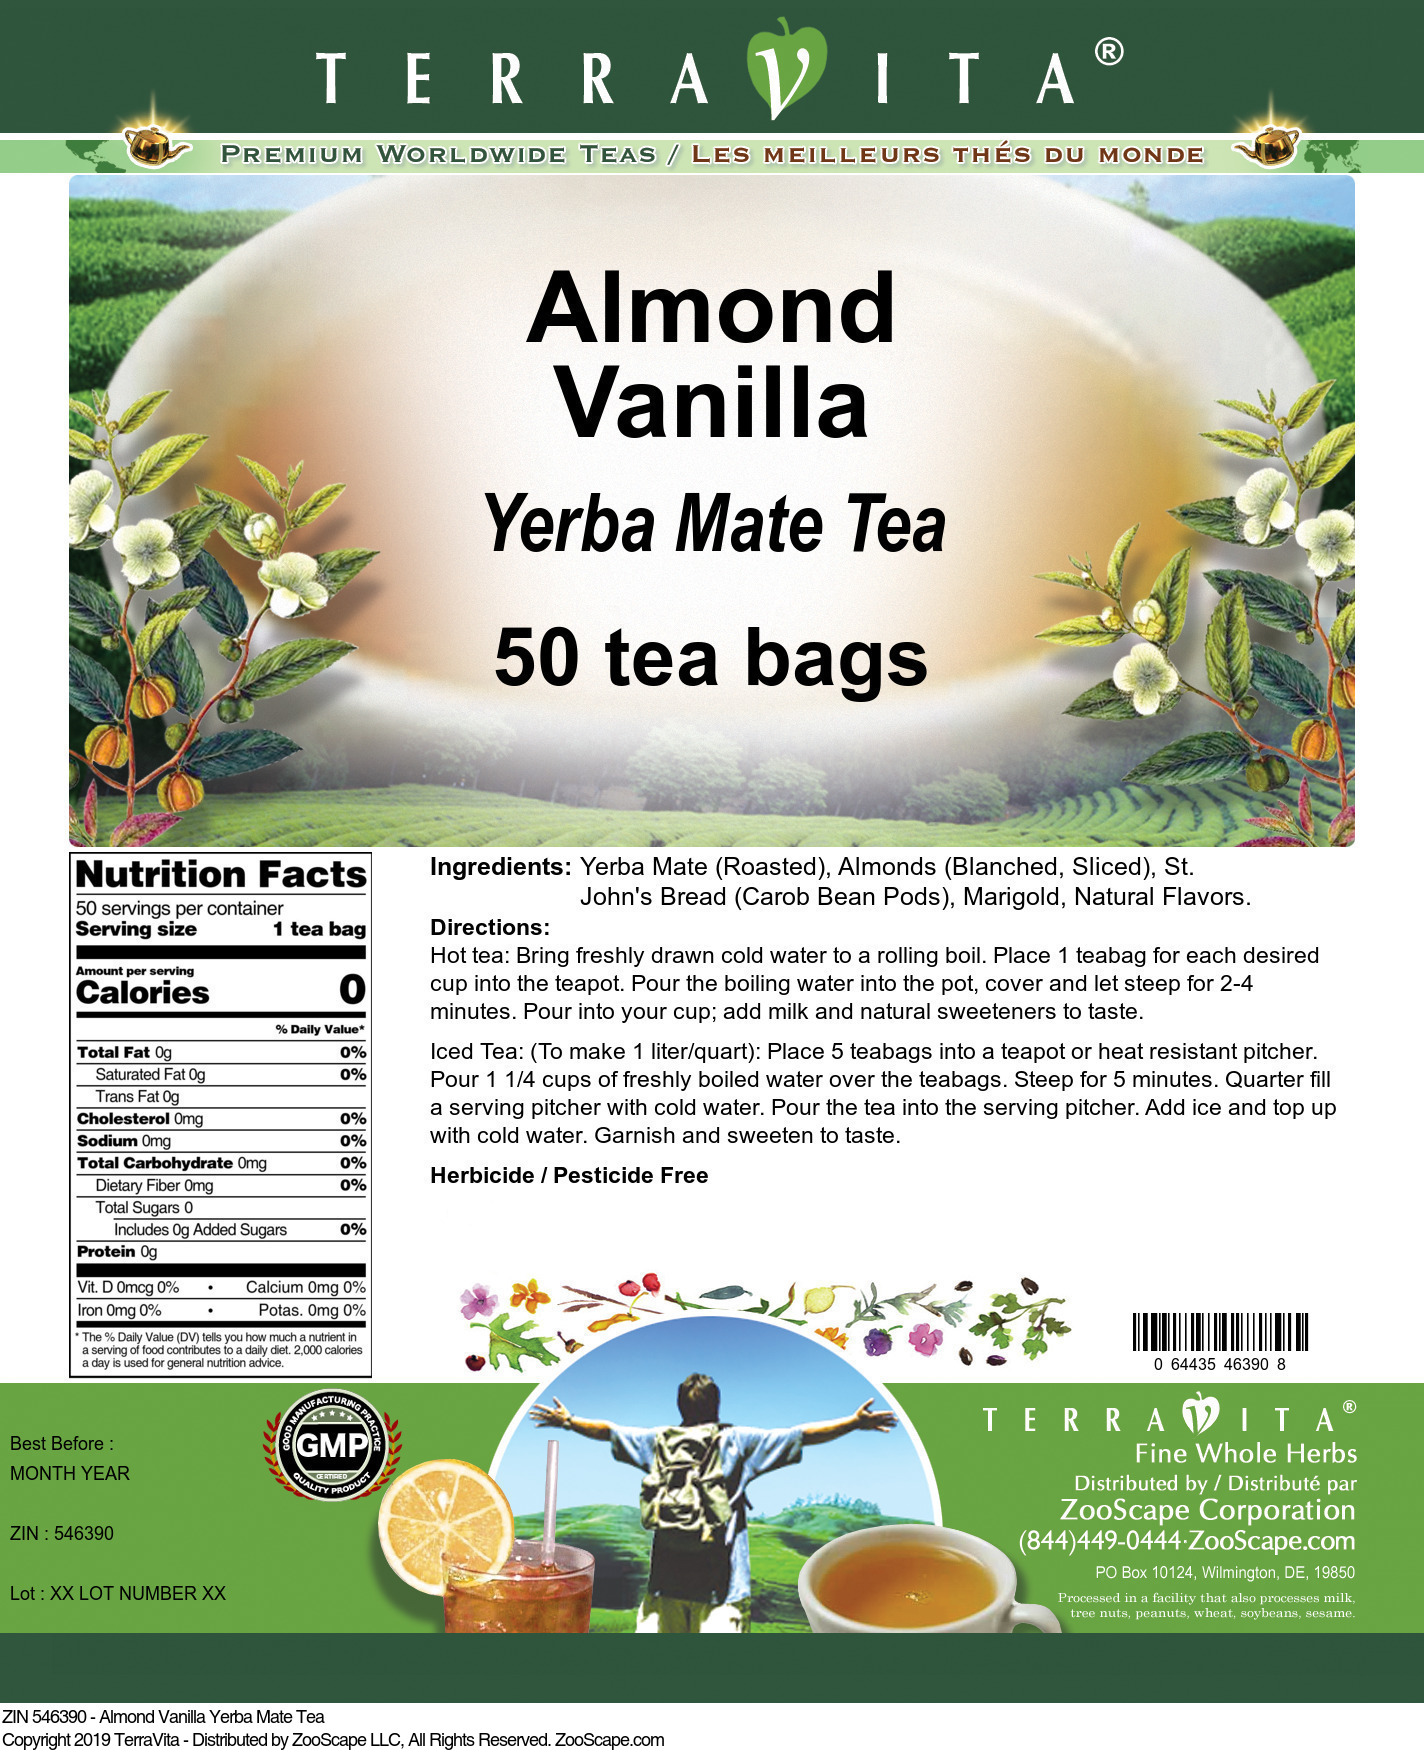 Almond Vanilla Yerba Mate Tea - Label